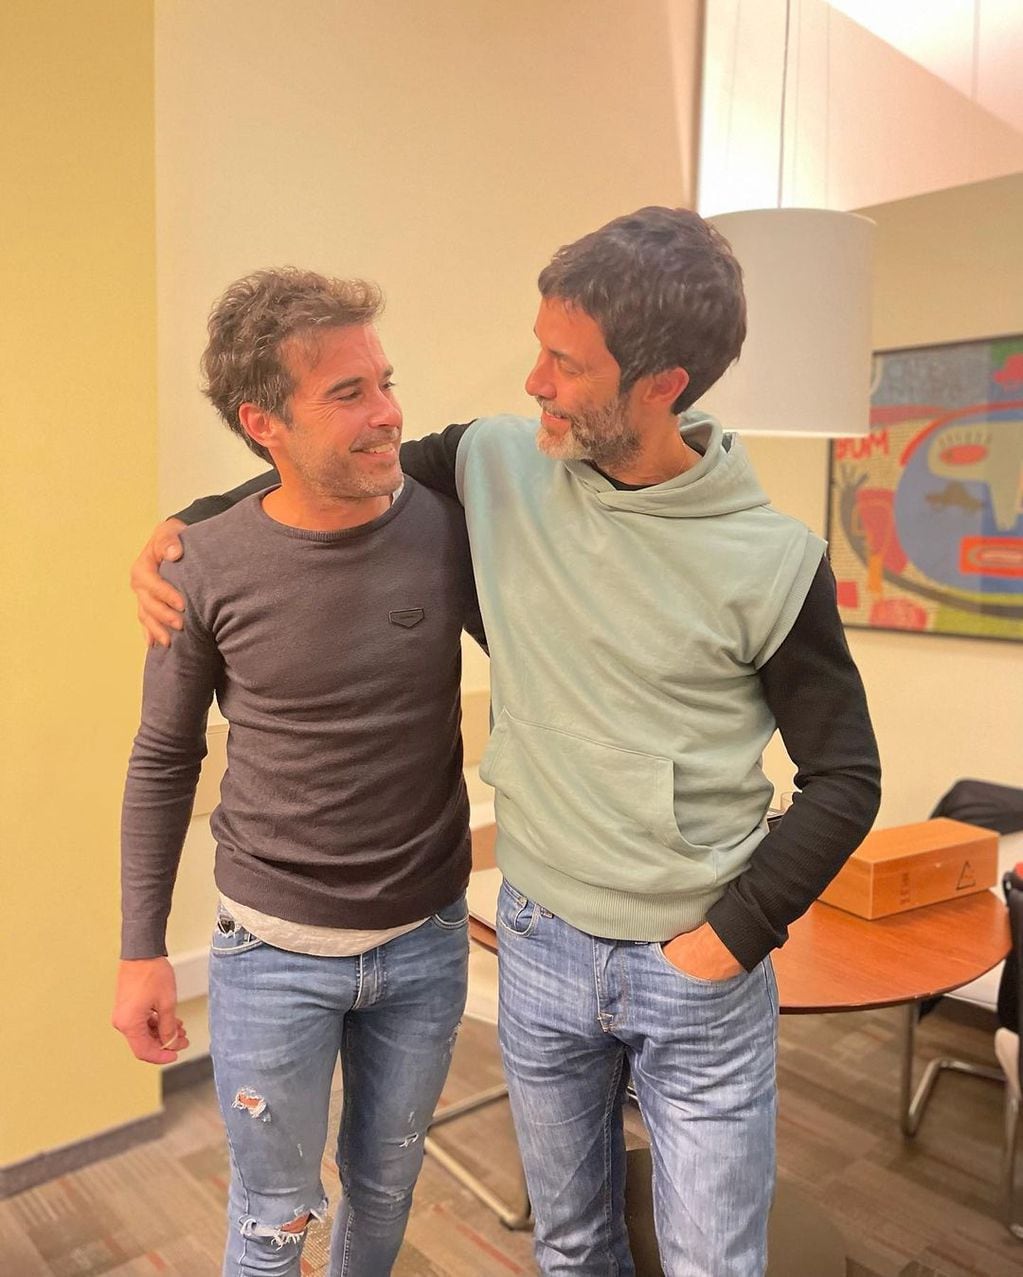 Nicolás Cabré y Mariano Martínez volverán a trabajar juntos, anunciaron en sus redes sociales.